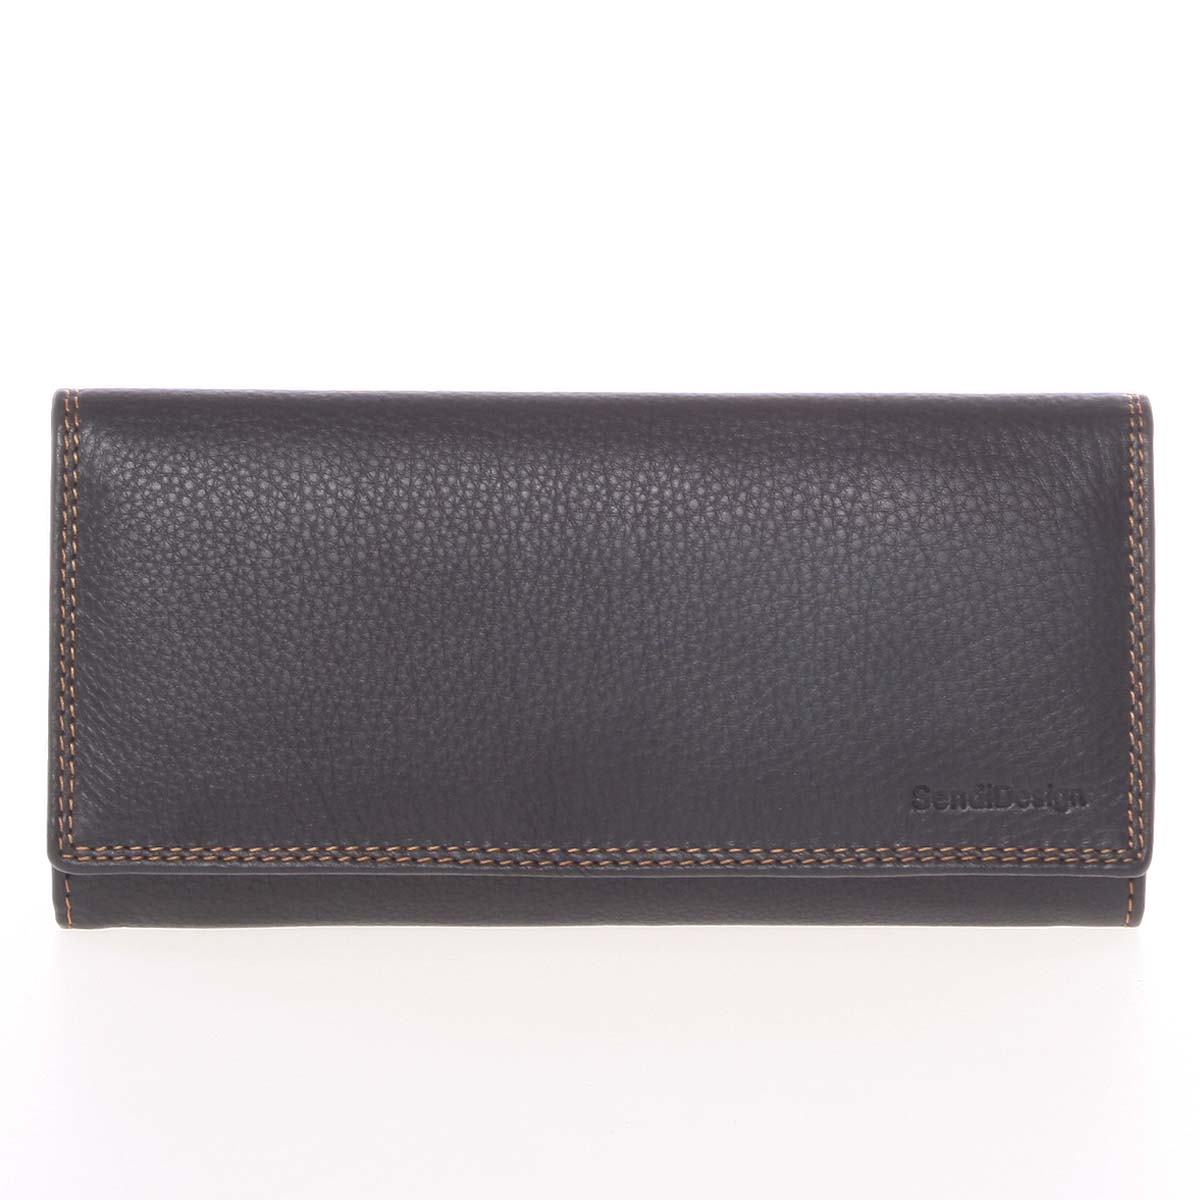 Velká dámská černá kožená prošívaná peněženka - SendiDesign Phylis